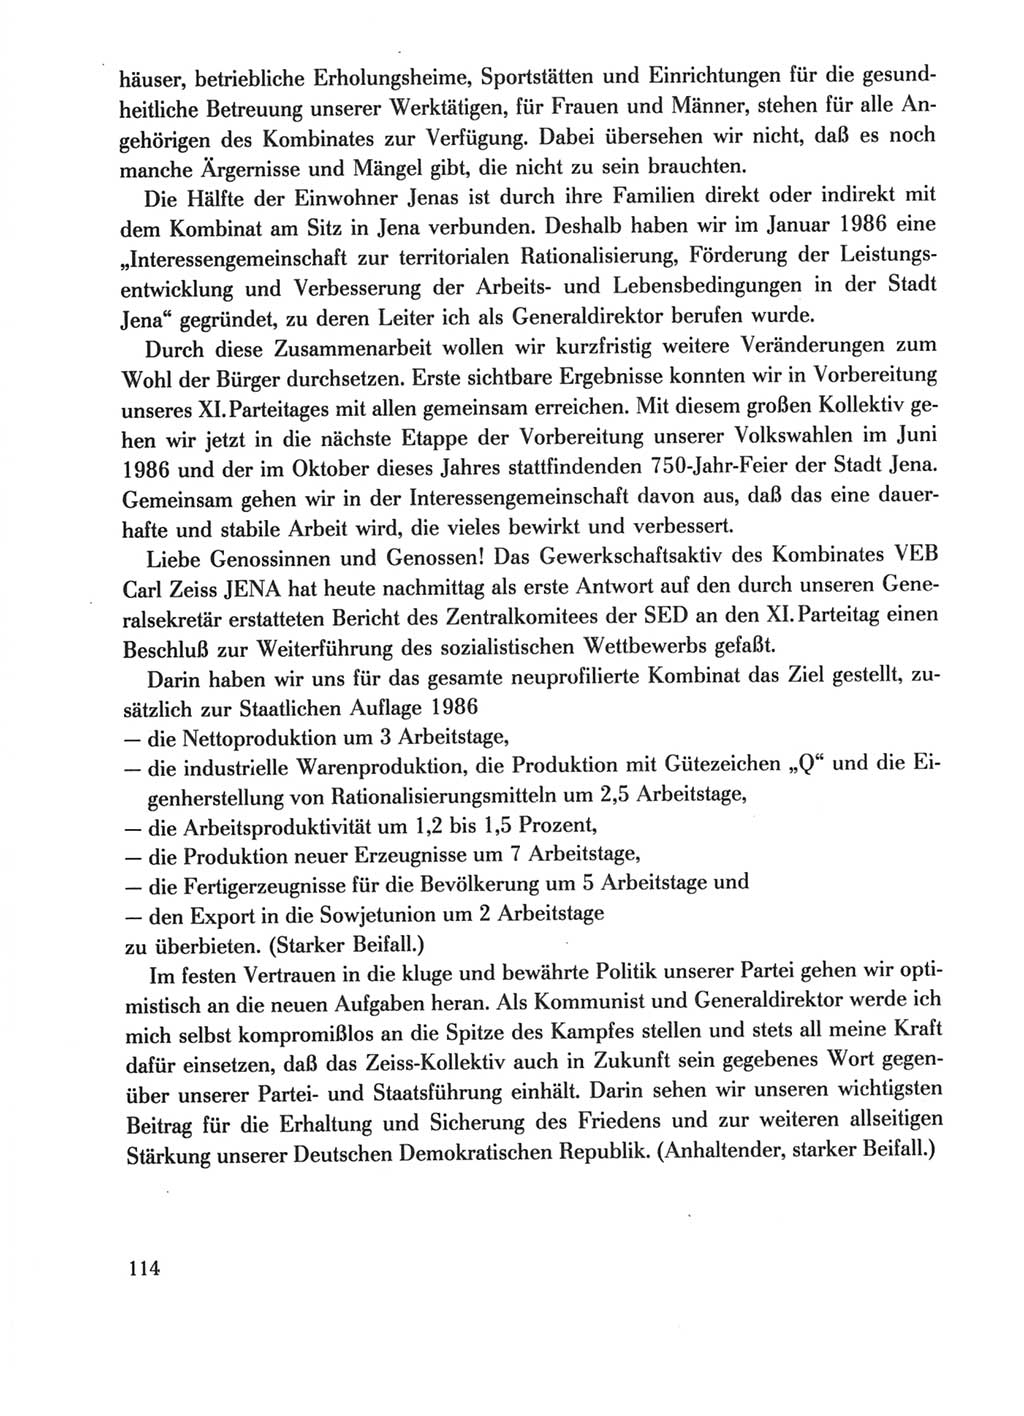 Protokoll der Verhandlungen des Ⅺ. Parteitages der Sozialistischen Einheitspartei Deutschlands (SED) [Deutsche Demokratische Republik (DDR)] 1986, Seite 114